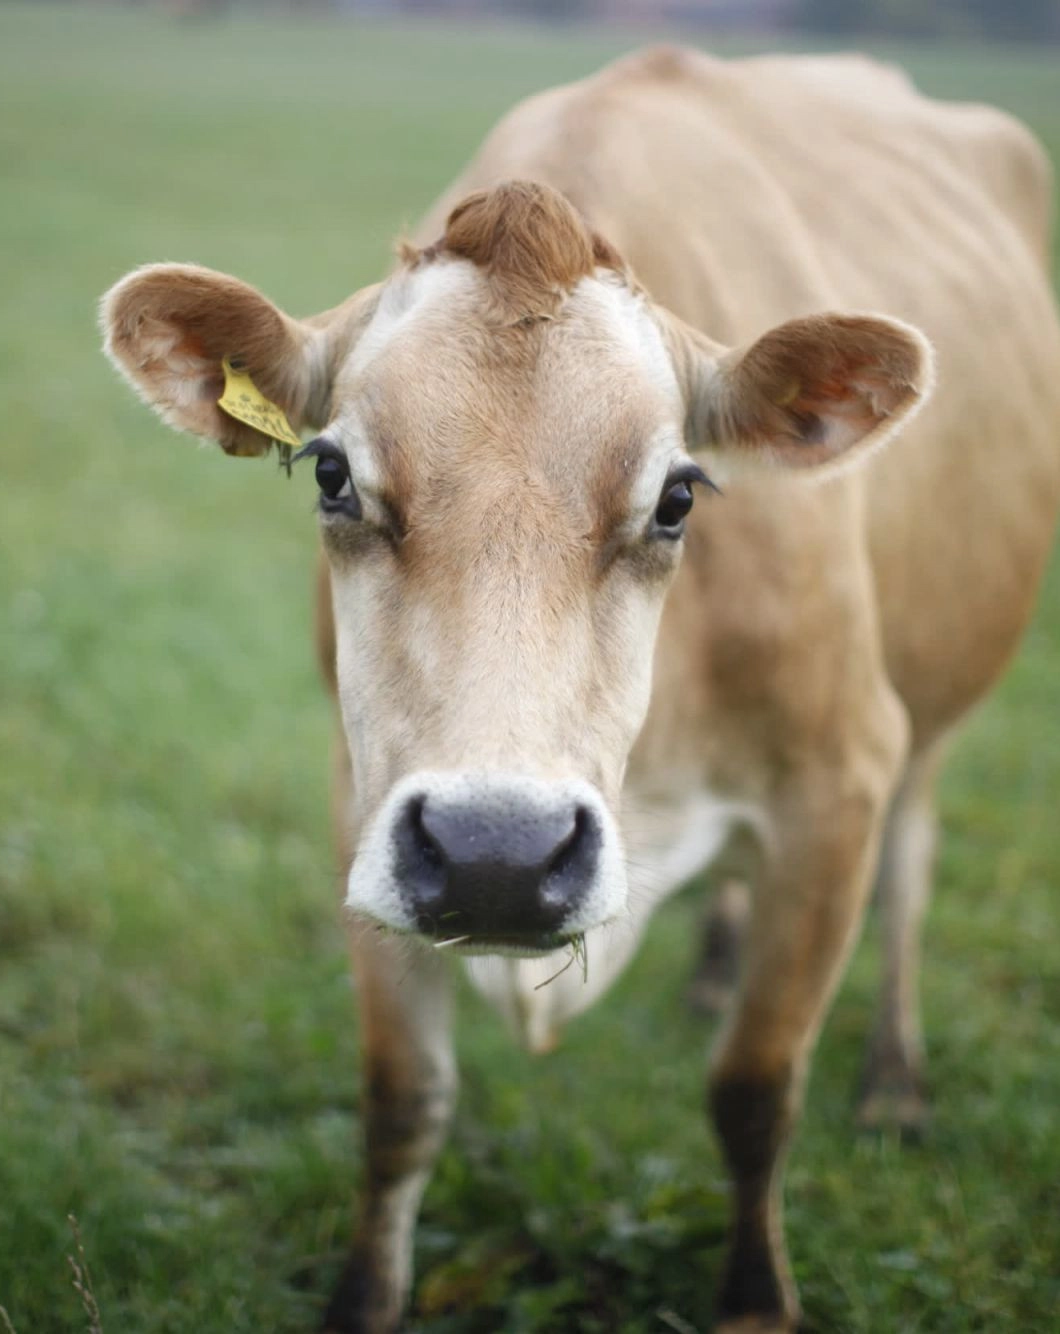 Dairy cow on a higher welfare farm